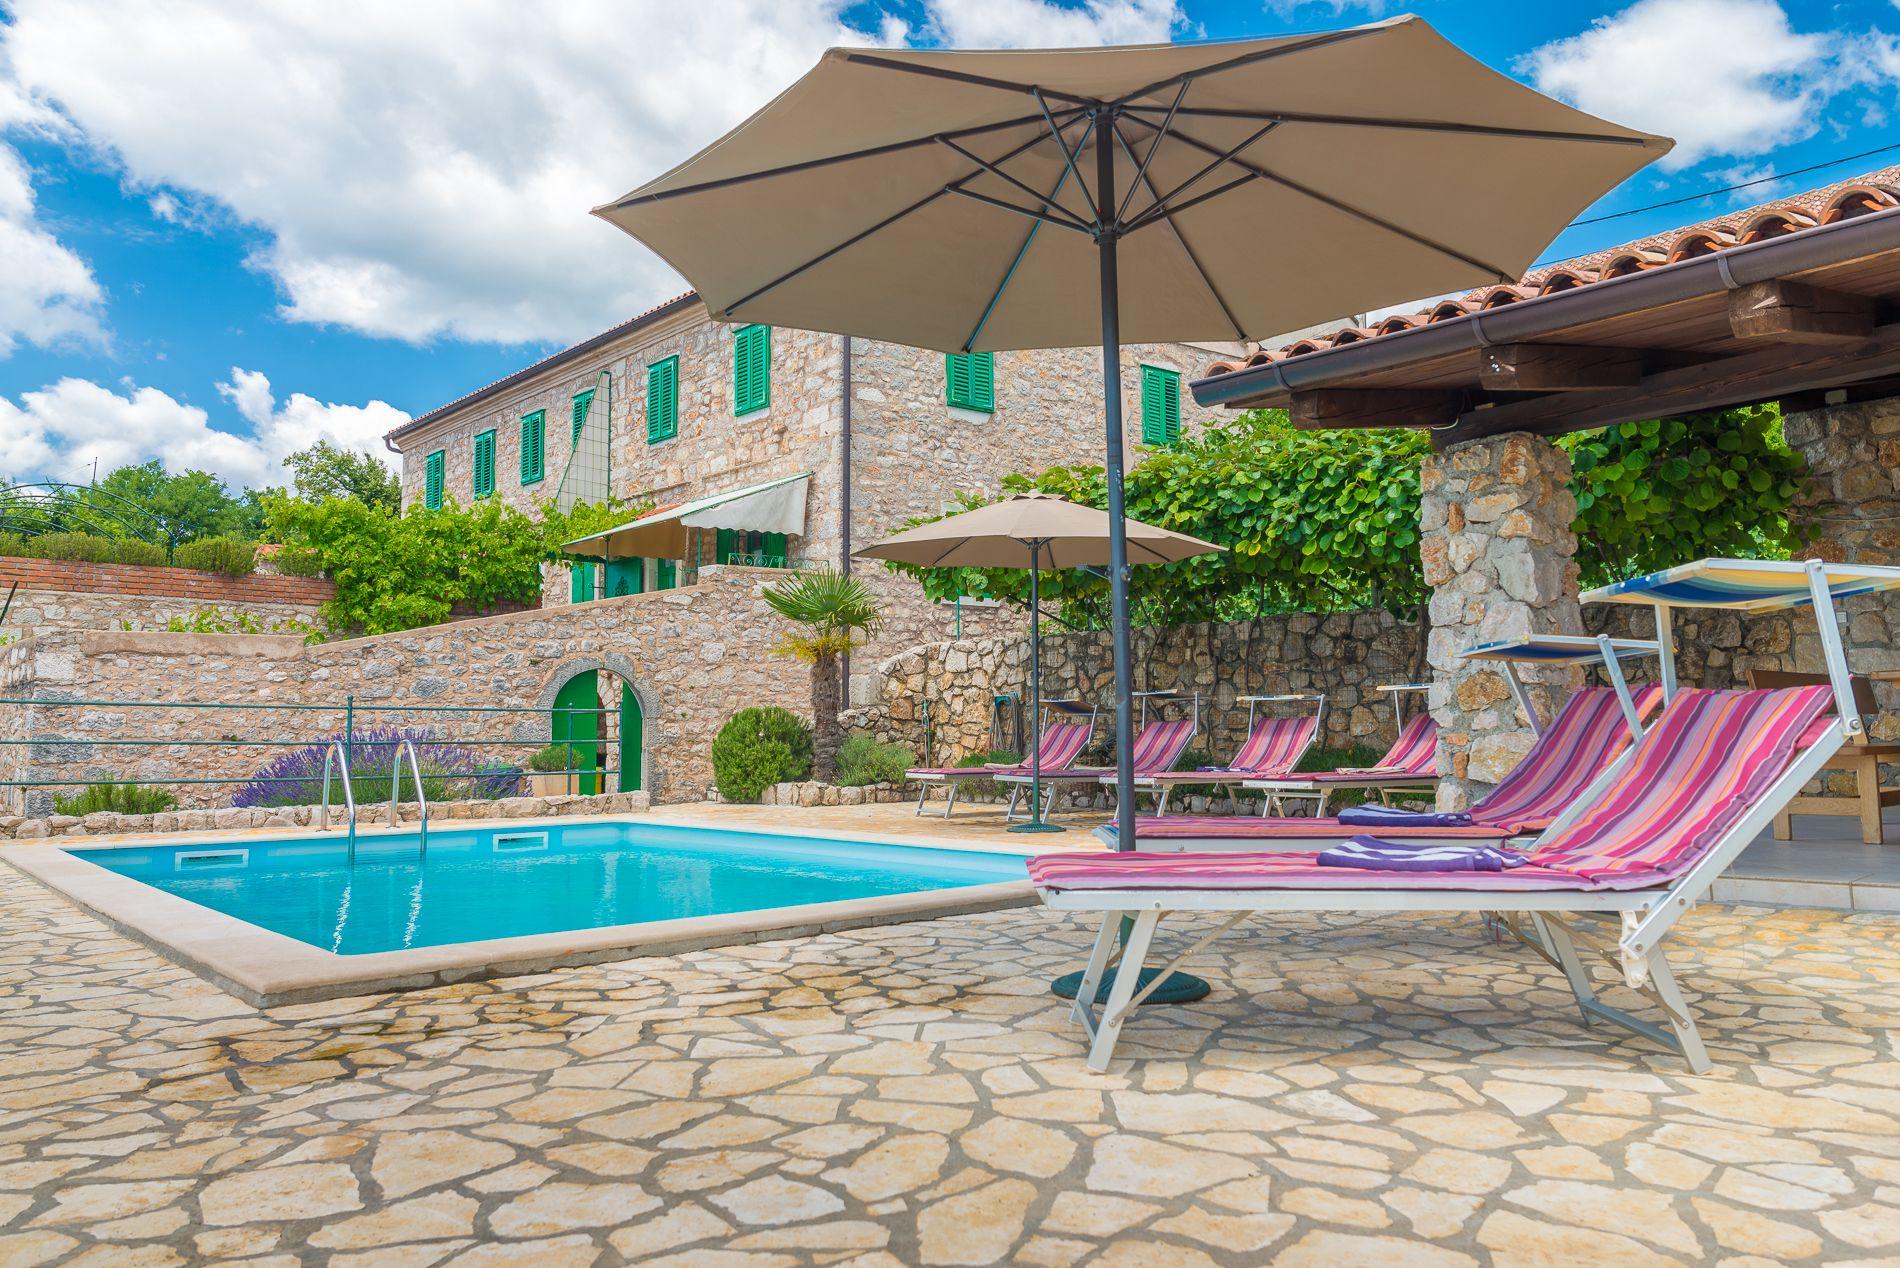 Ferienhaus mit Privatpool für 2 Personen  + 2  in Kroatien